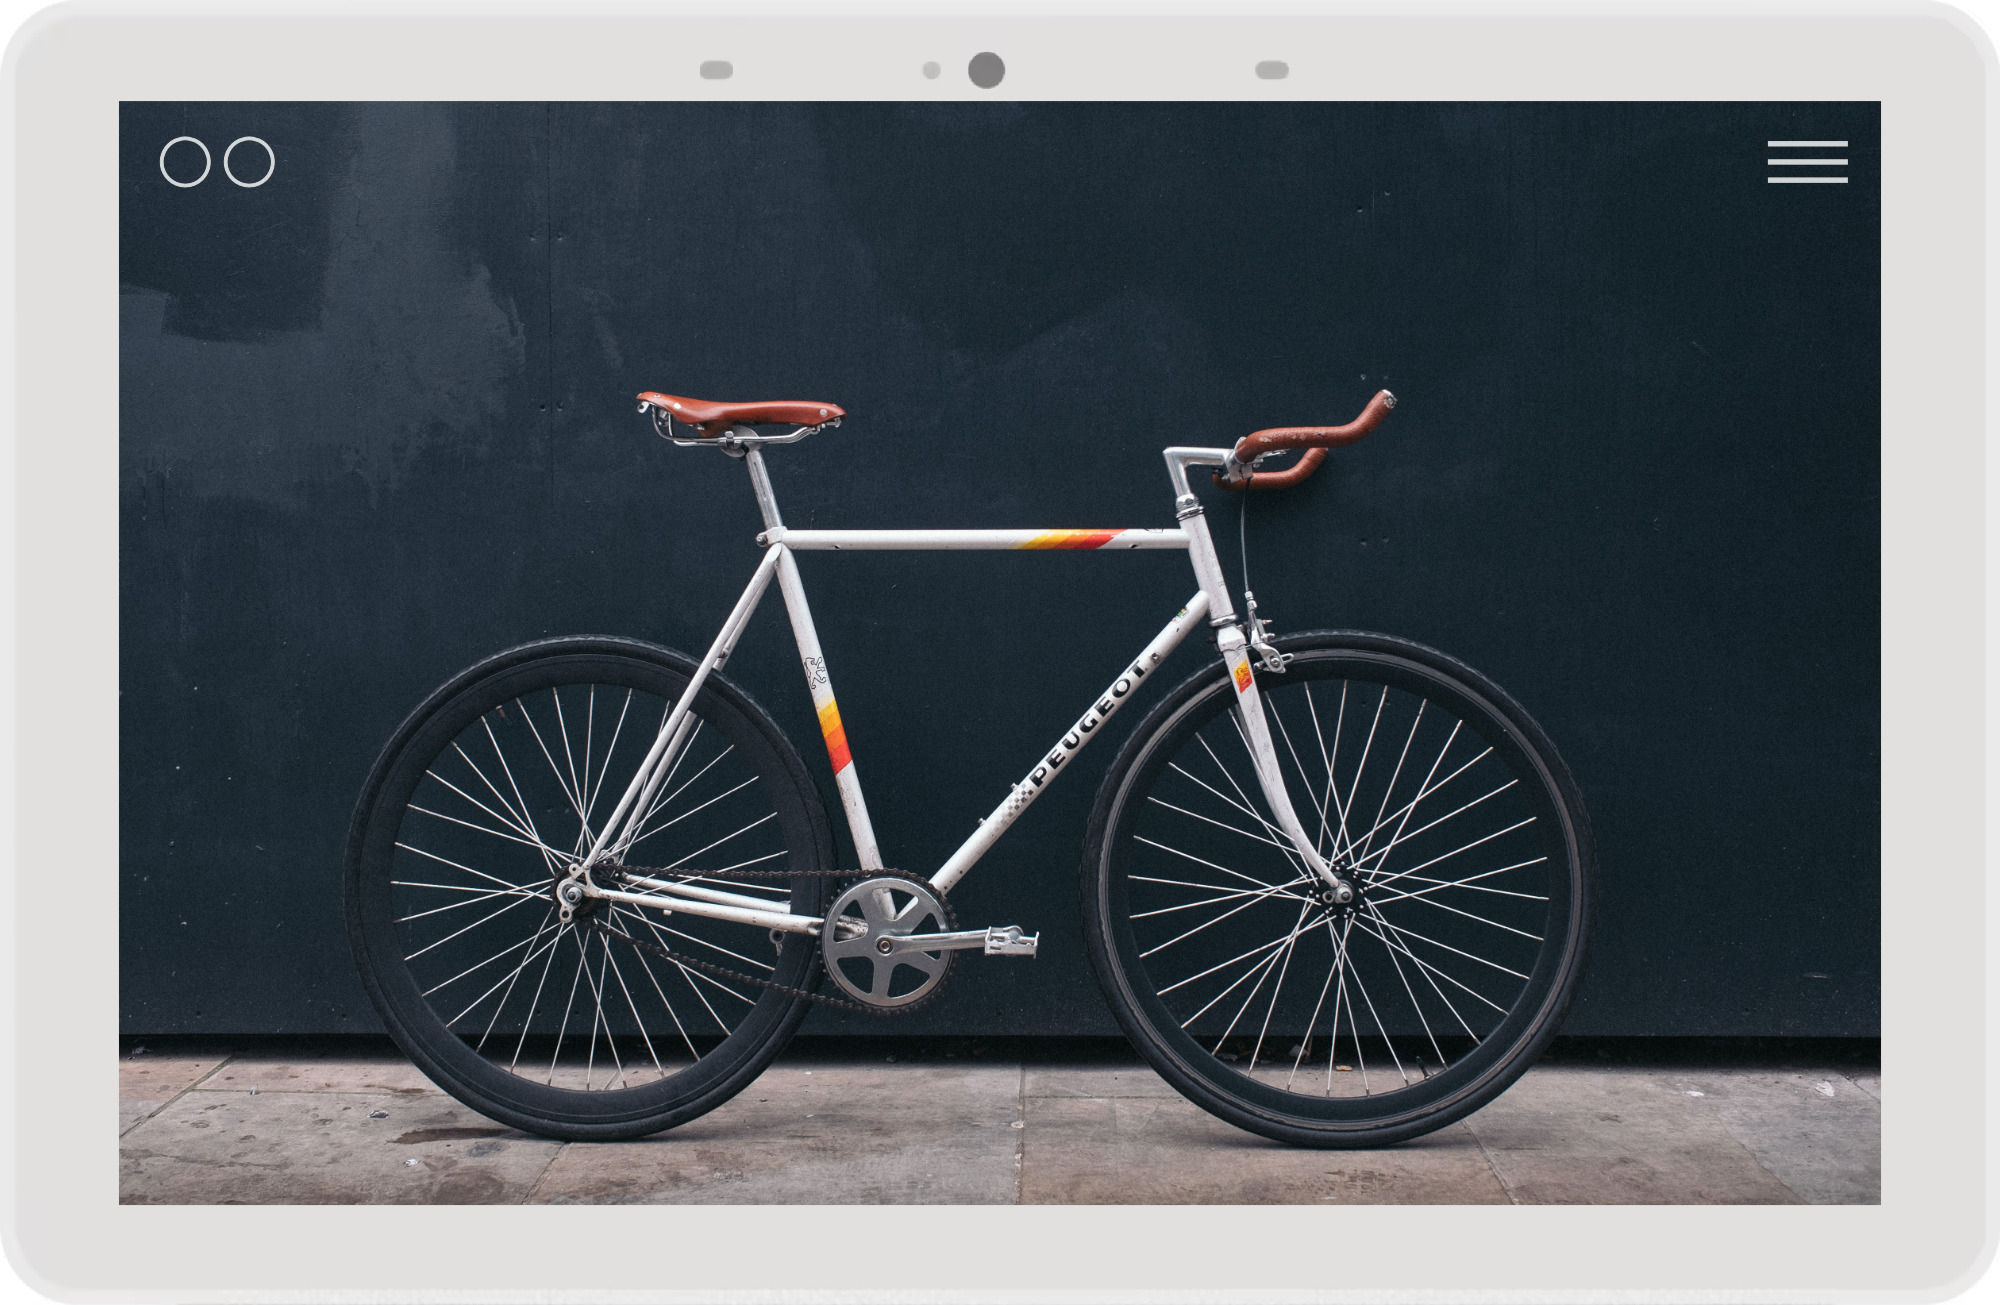 Branding Marketing - Vergleich Fahrradreifen